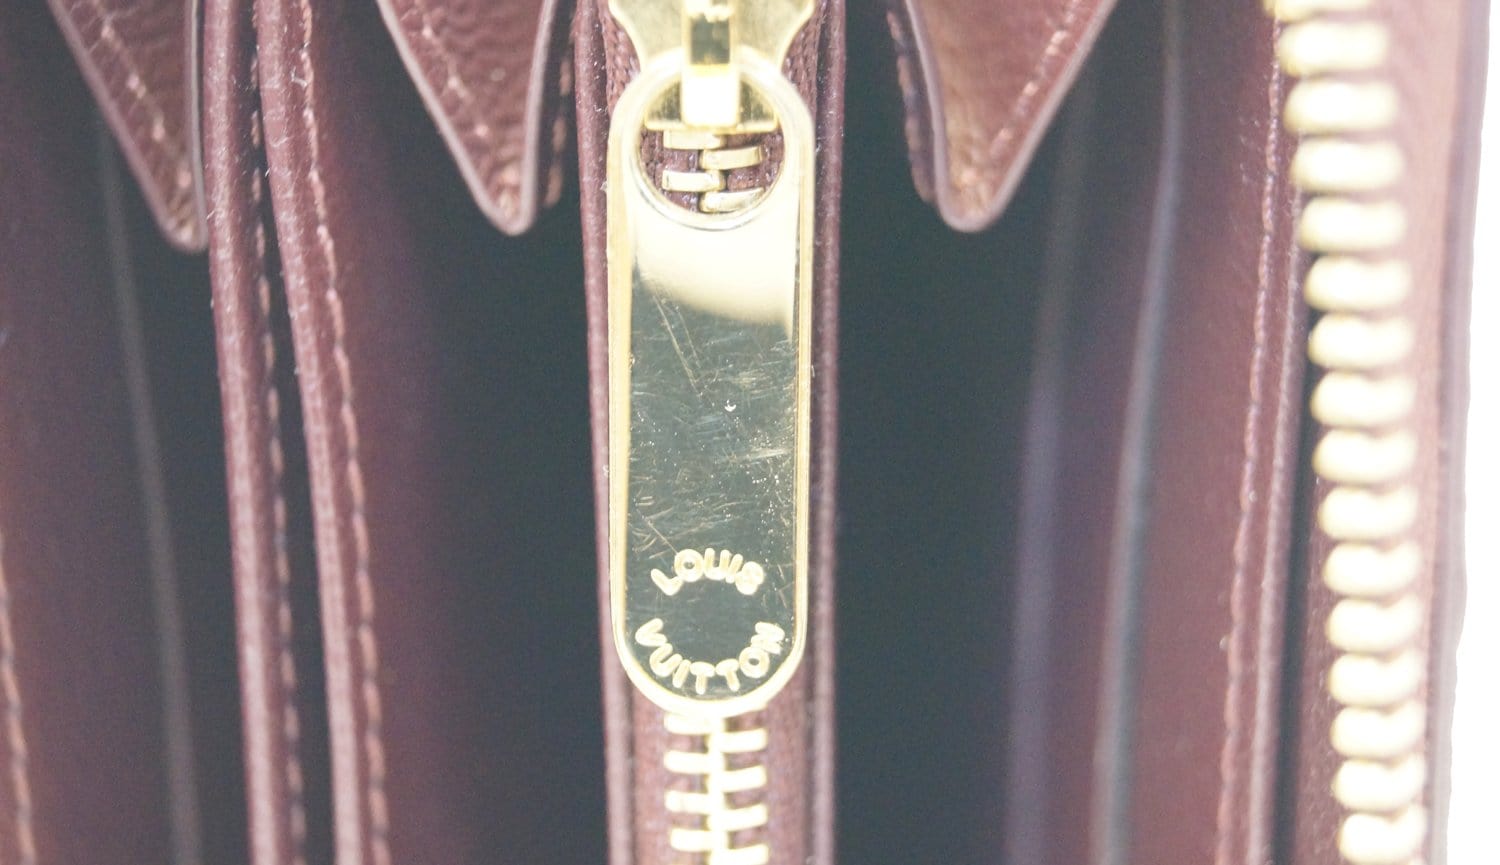 Zippy XL wallet Ostrich Leather - Les Extraordinaires - Exotics